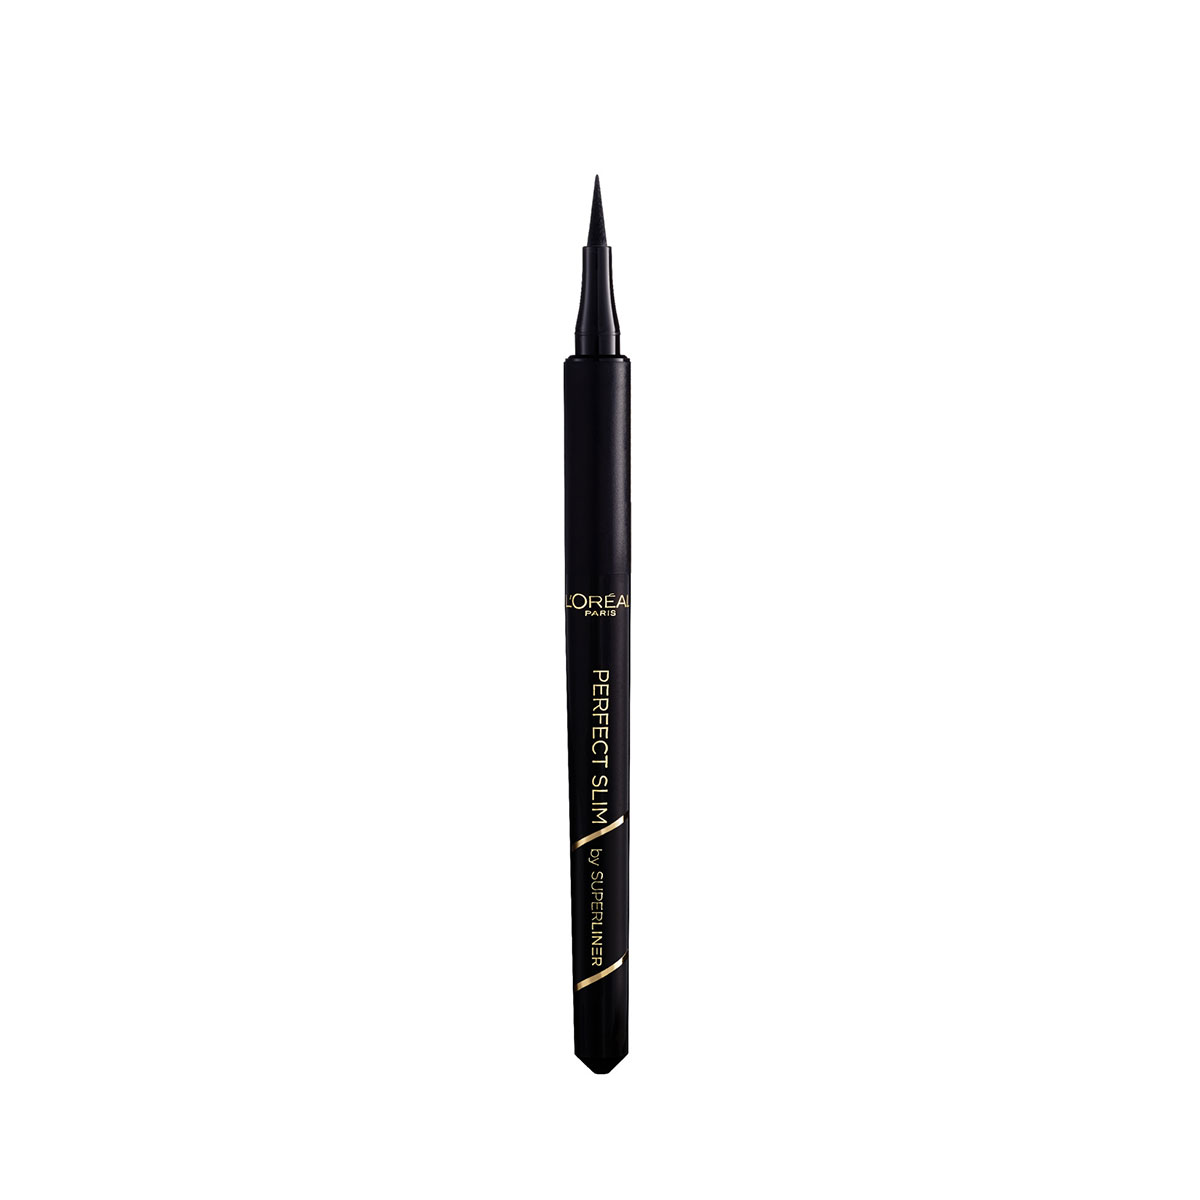 L Oréal Paris 欧莱雅 完美纤细眼线液笔 8g  01 Intense Black